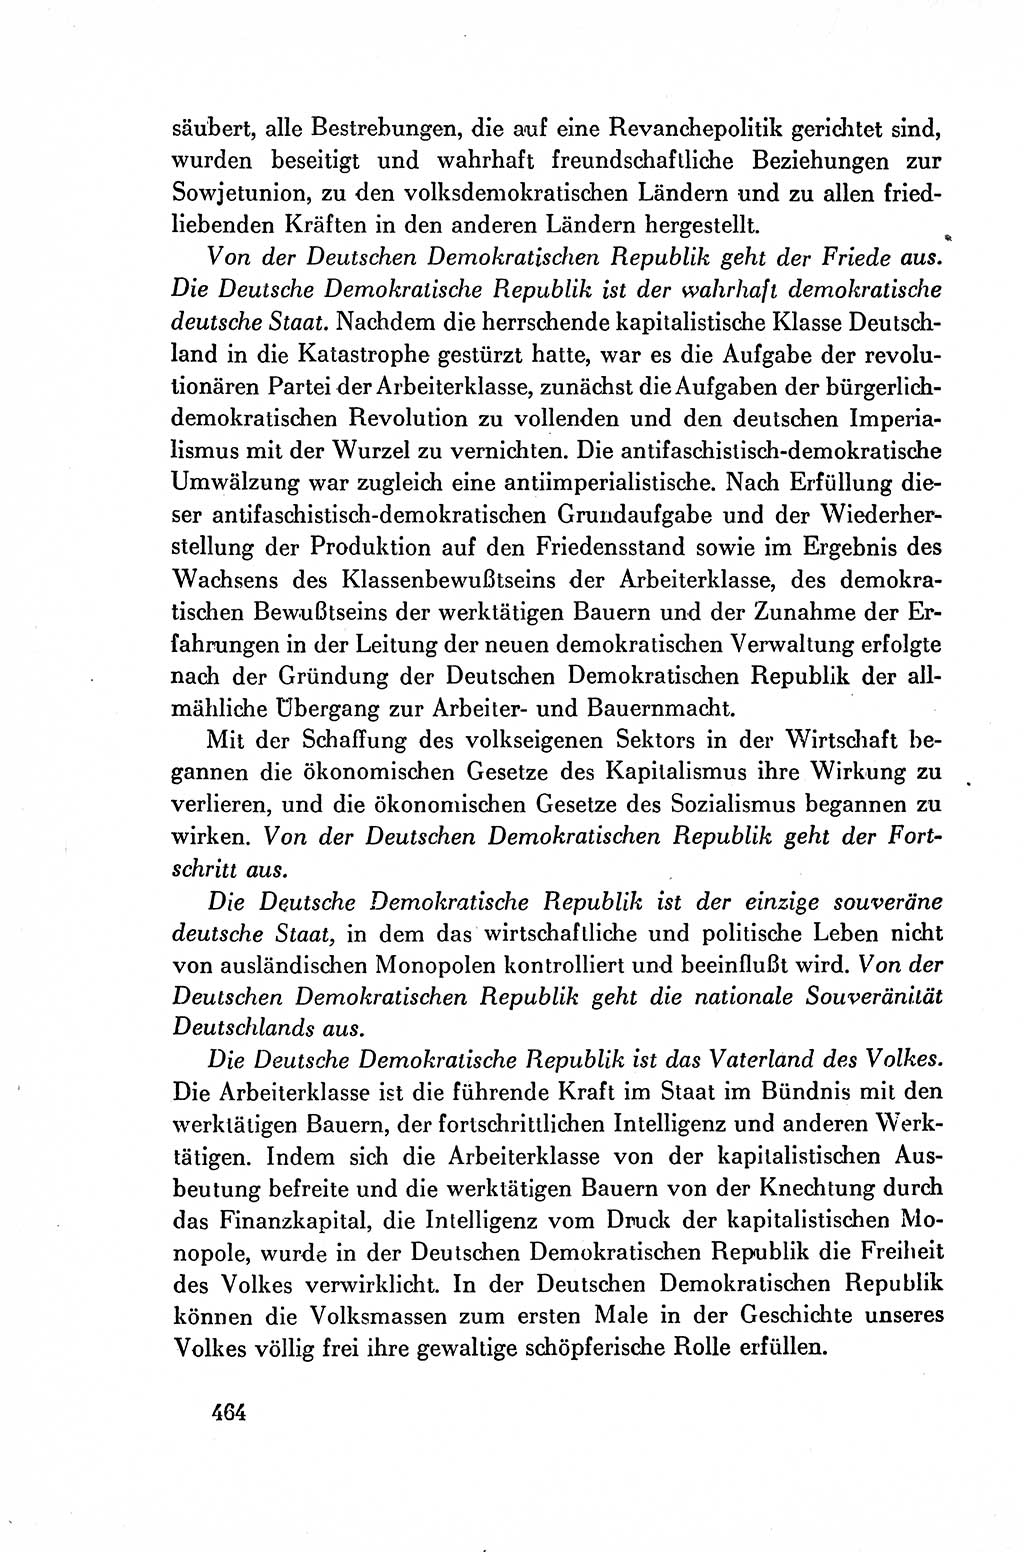 Dokumente der Sozialistischen Einheitspartei Deutschlands (SED) [Deutsche Demokratische Republik (DDR)] 1954-1955, Seite 464 (Dok. SED DDR 1954-1955, S. 464)